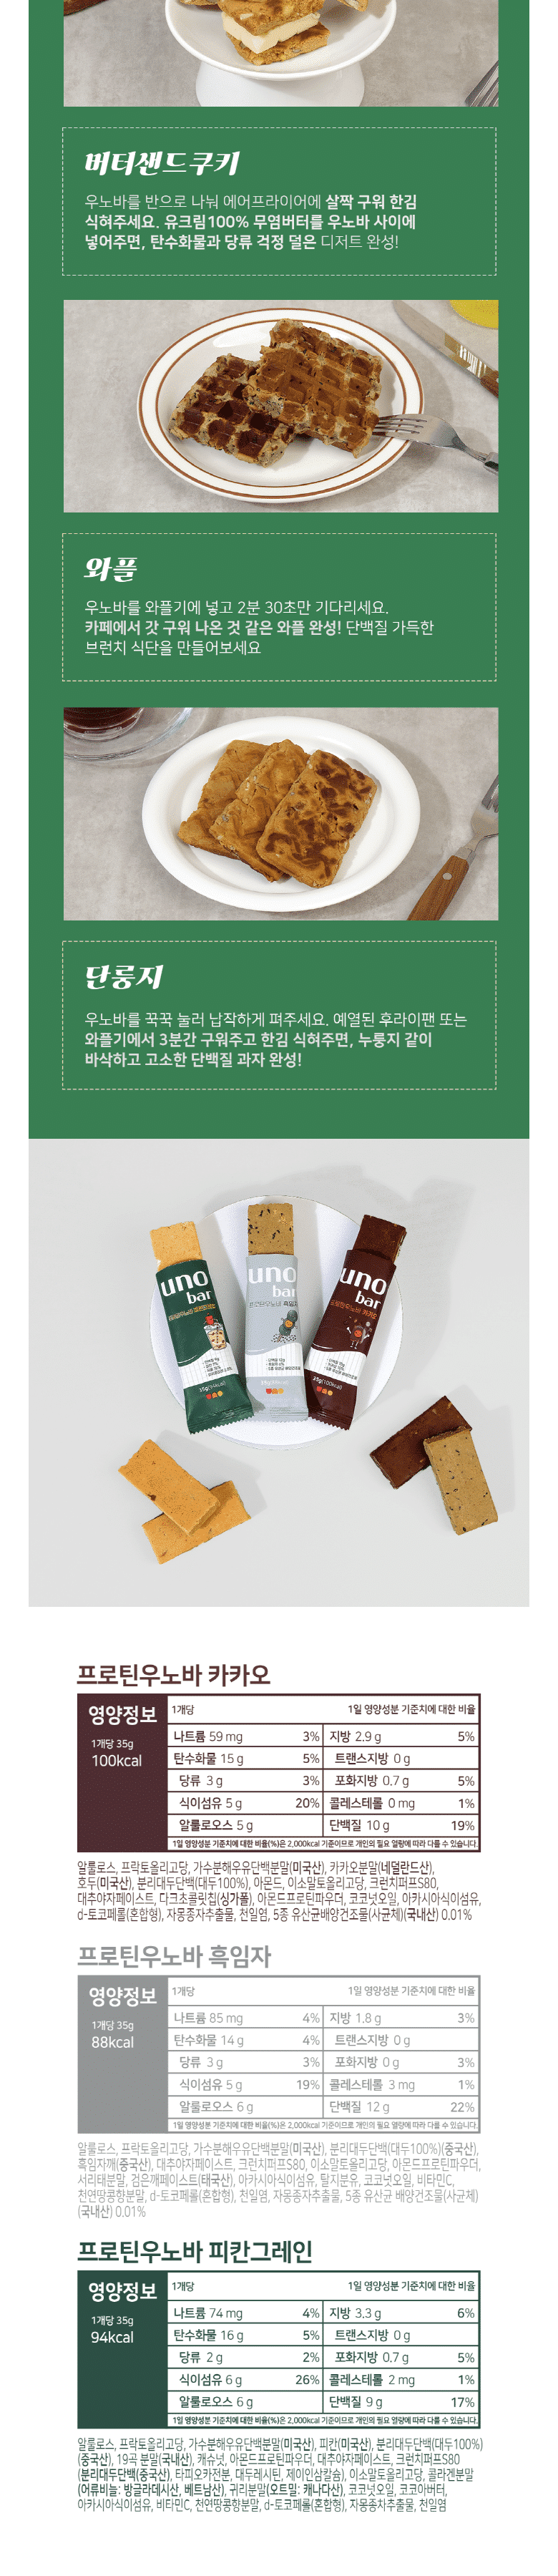 韓國食品-[프로틴 우노바] 흑임자 35g